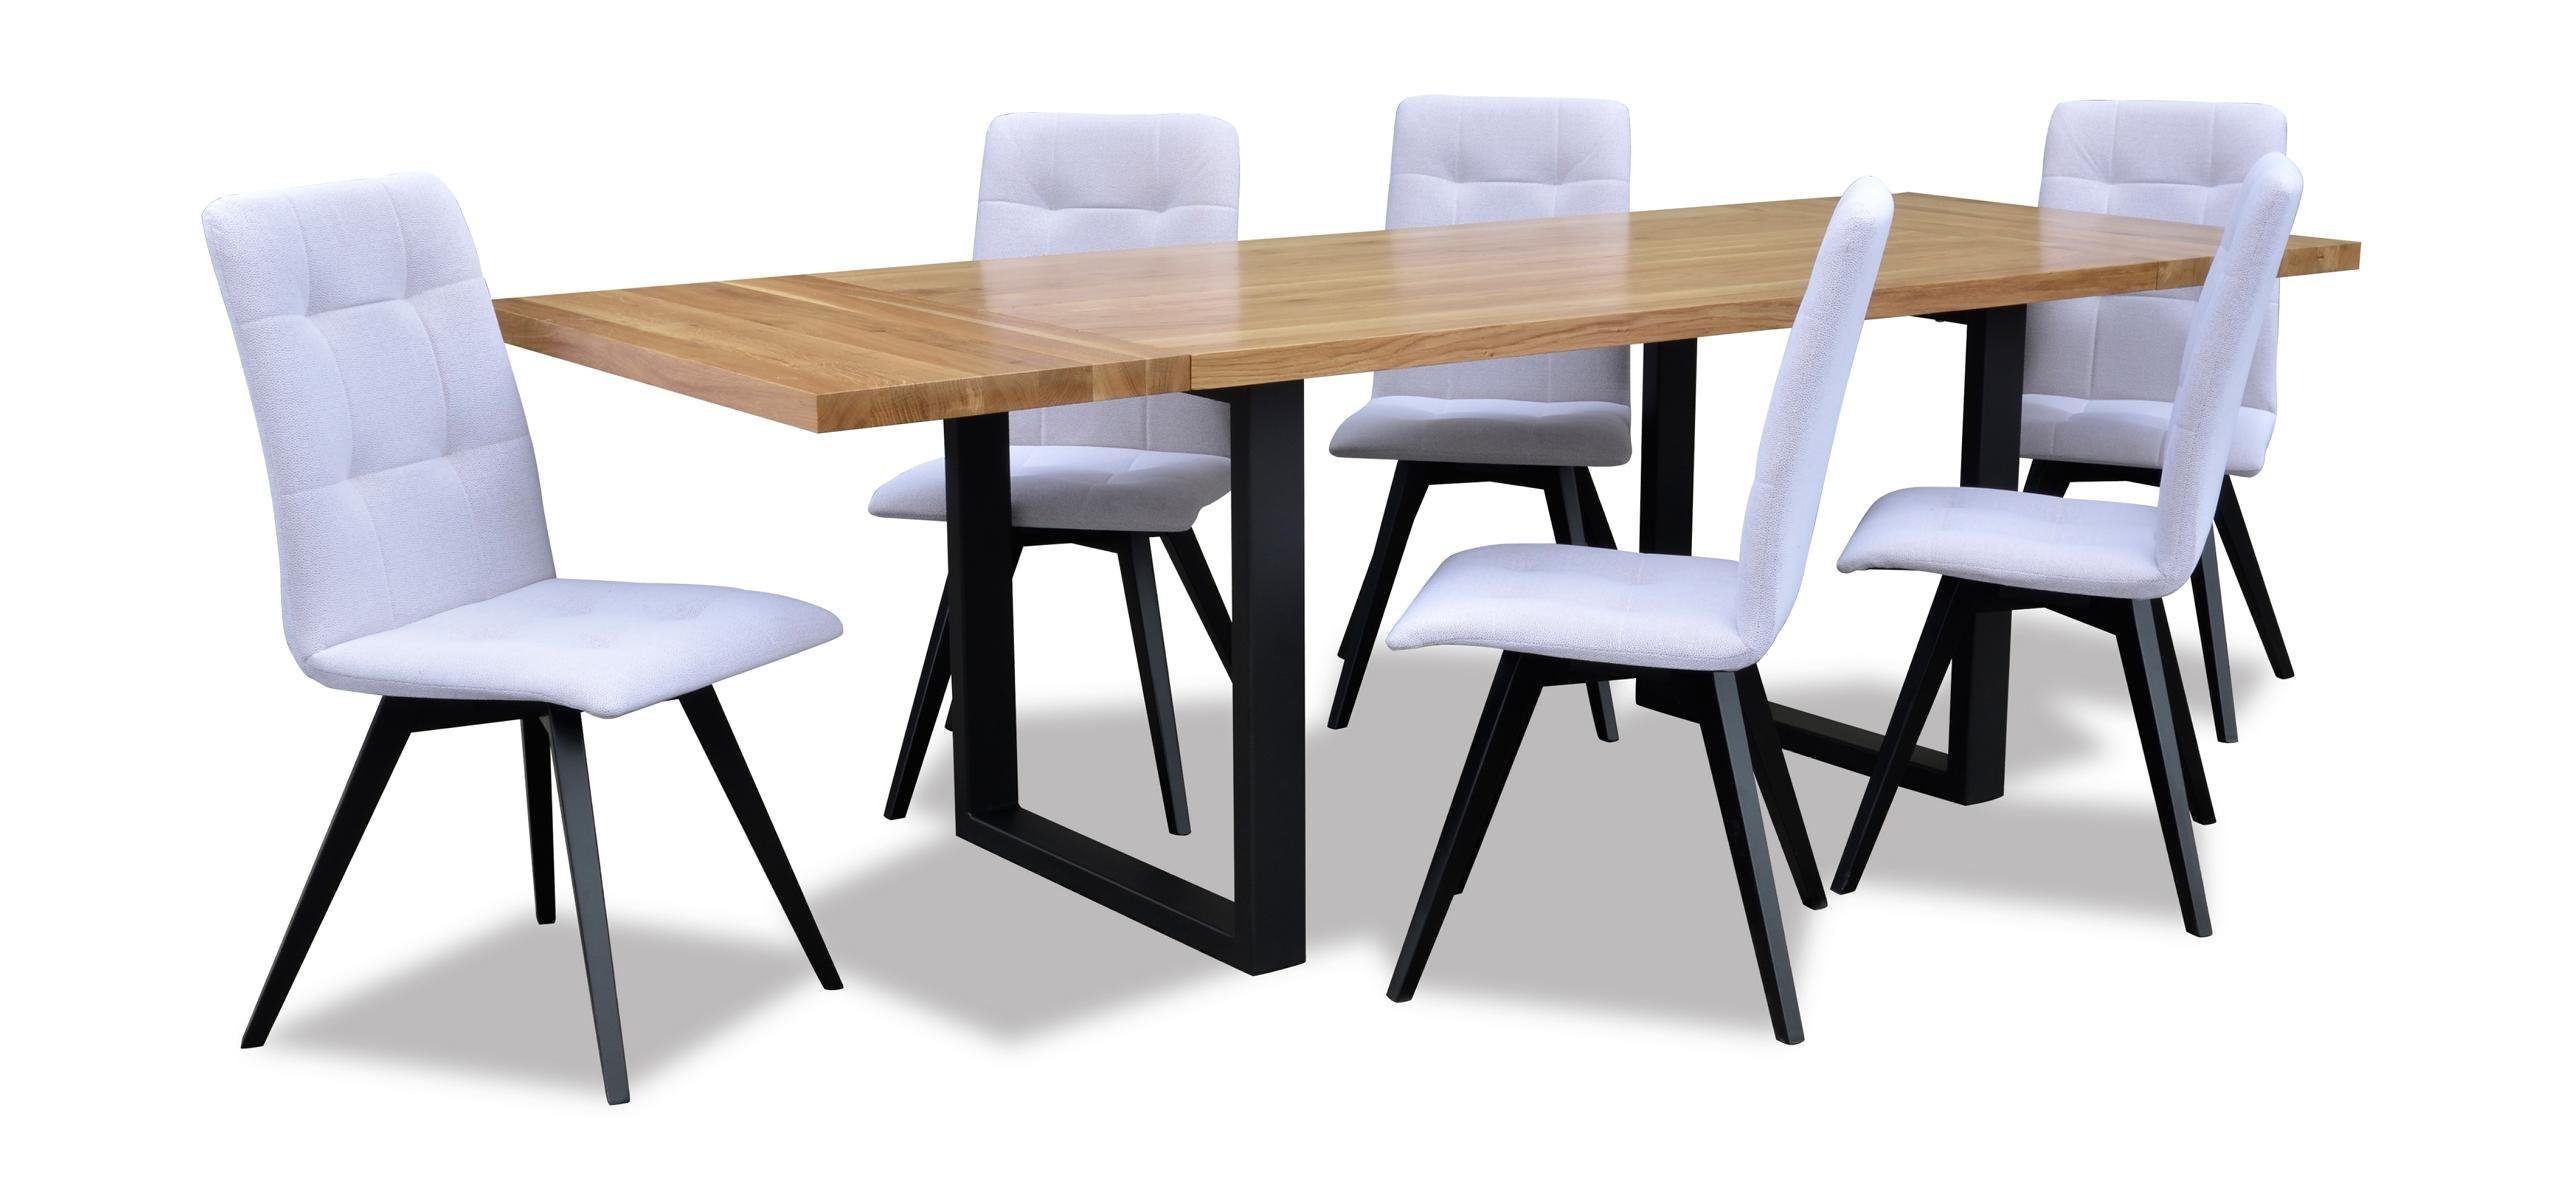 JVmoebel Essgruppe, Ess Zimmer Holz Tisch Design Wohn Set Garnitur Set Klassische Möbel 7 tlg. Neu